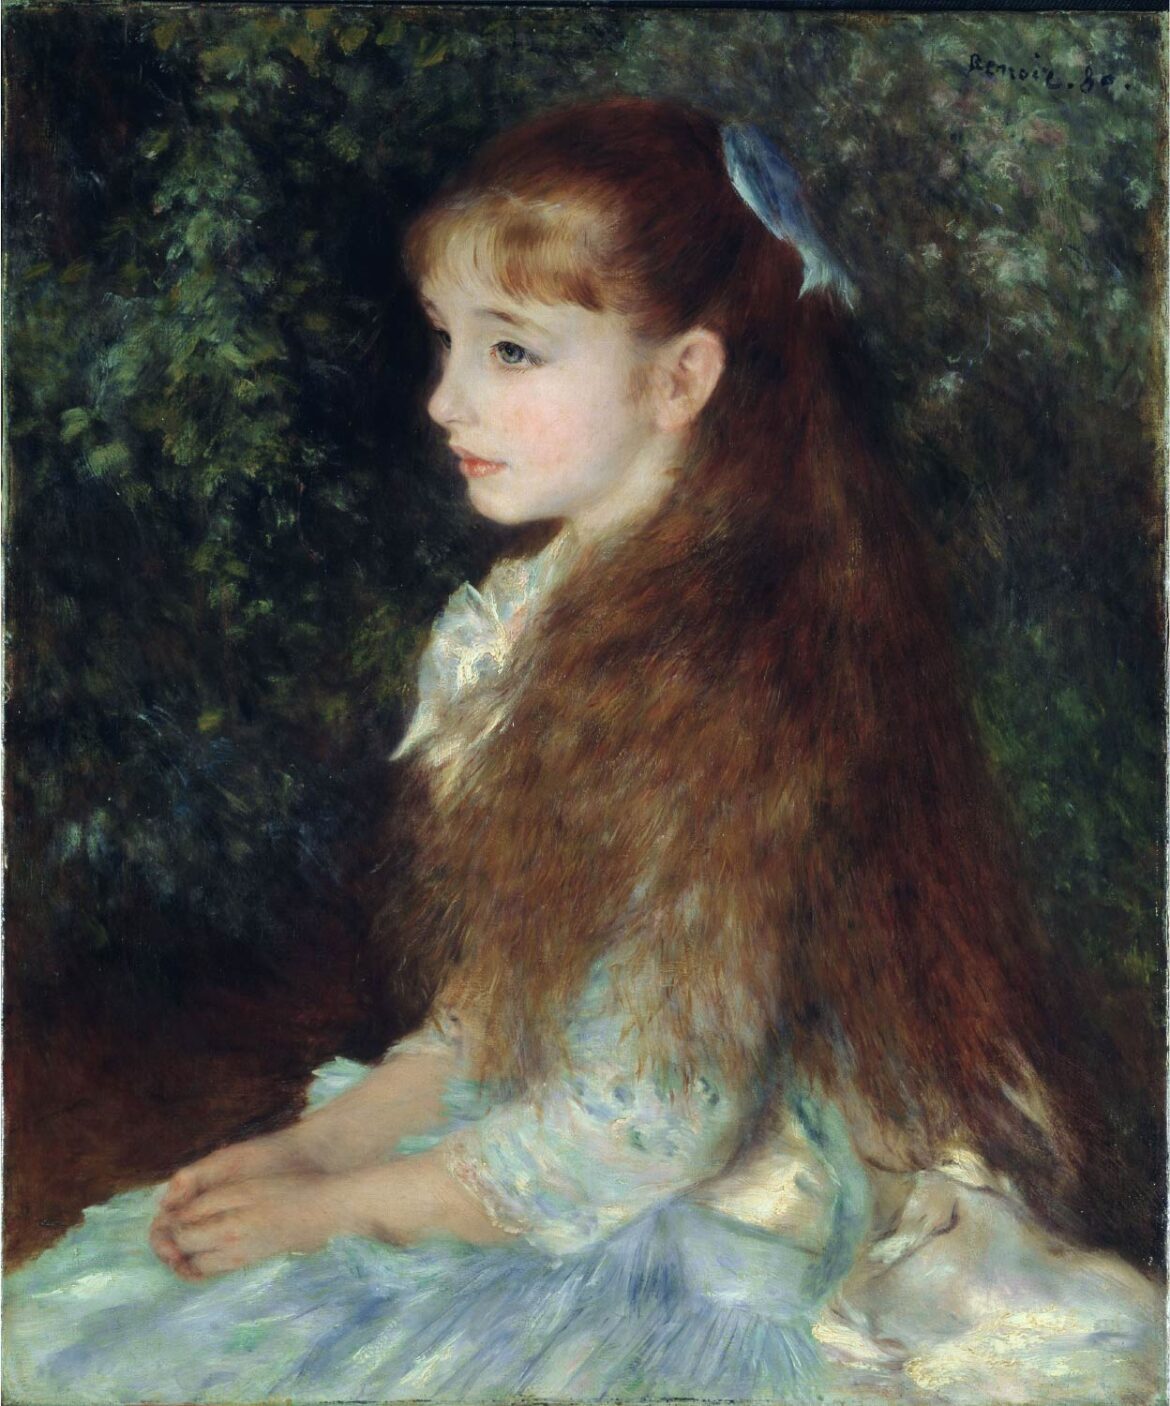 【無料壁紙】ピエール＝オーギュスト・ルノワール「可愛いイレーヌ (1880)」 / Pierre Auguste Renoir_Pierre Auguste Renoir_Portrait of Mademoiselle Irène Cahen d’Anvers (1880)